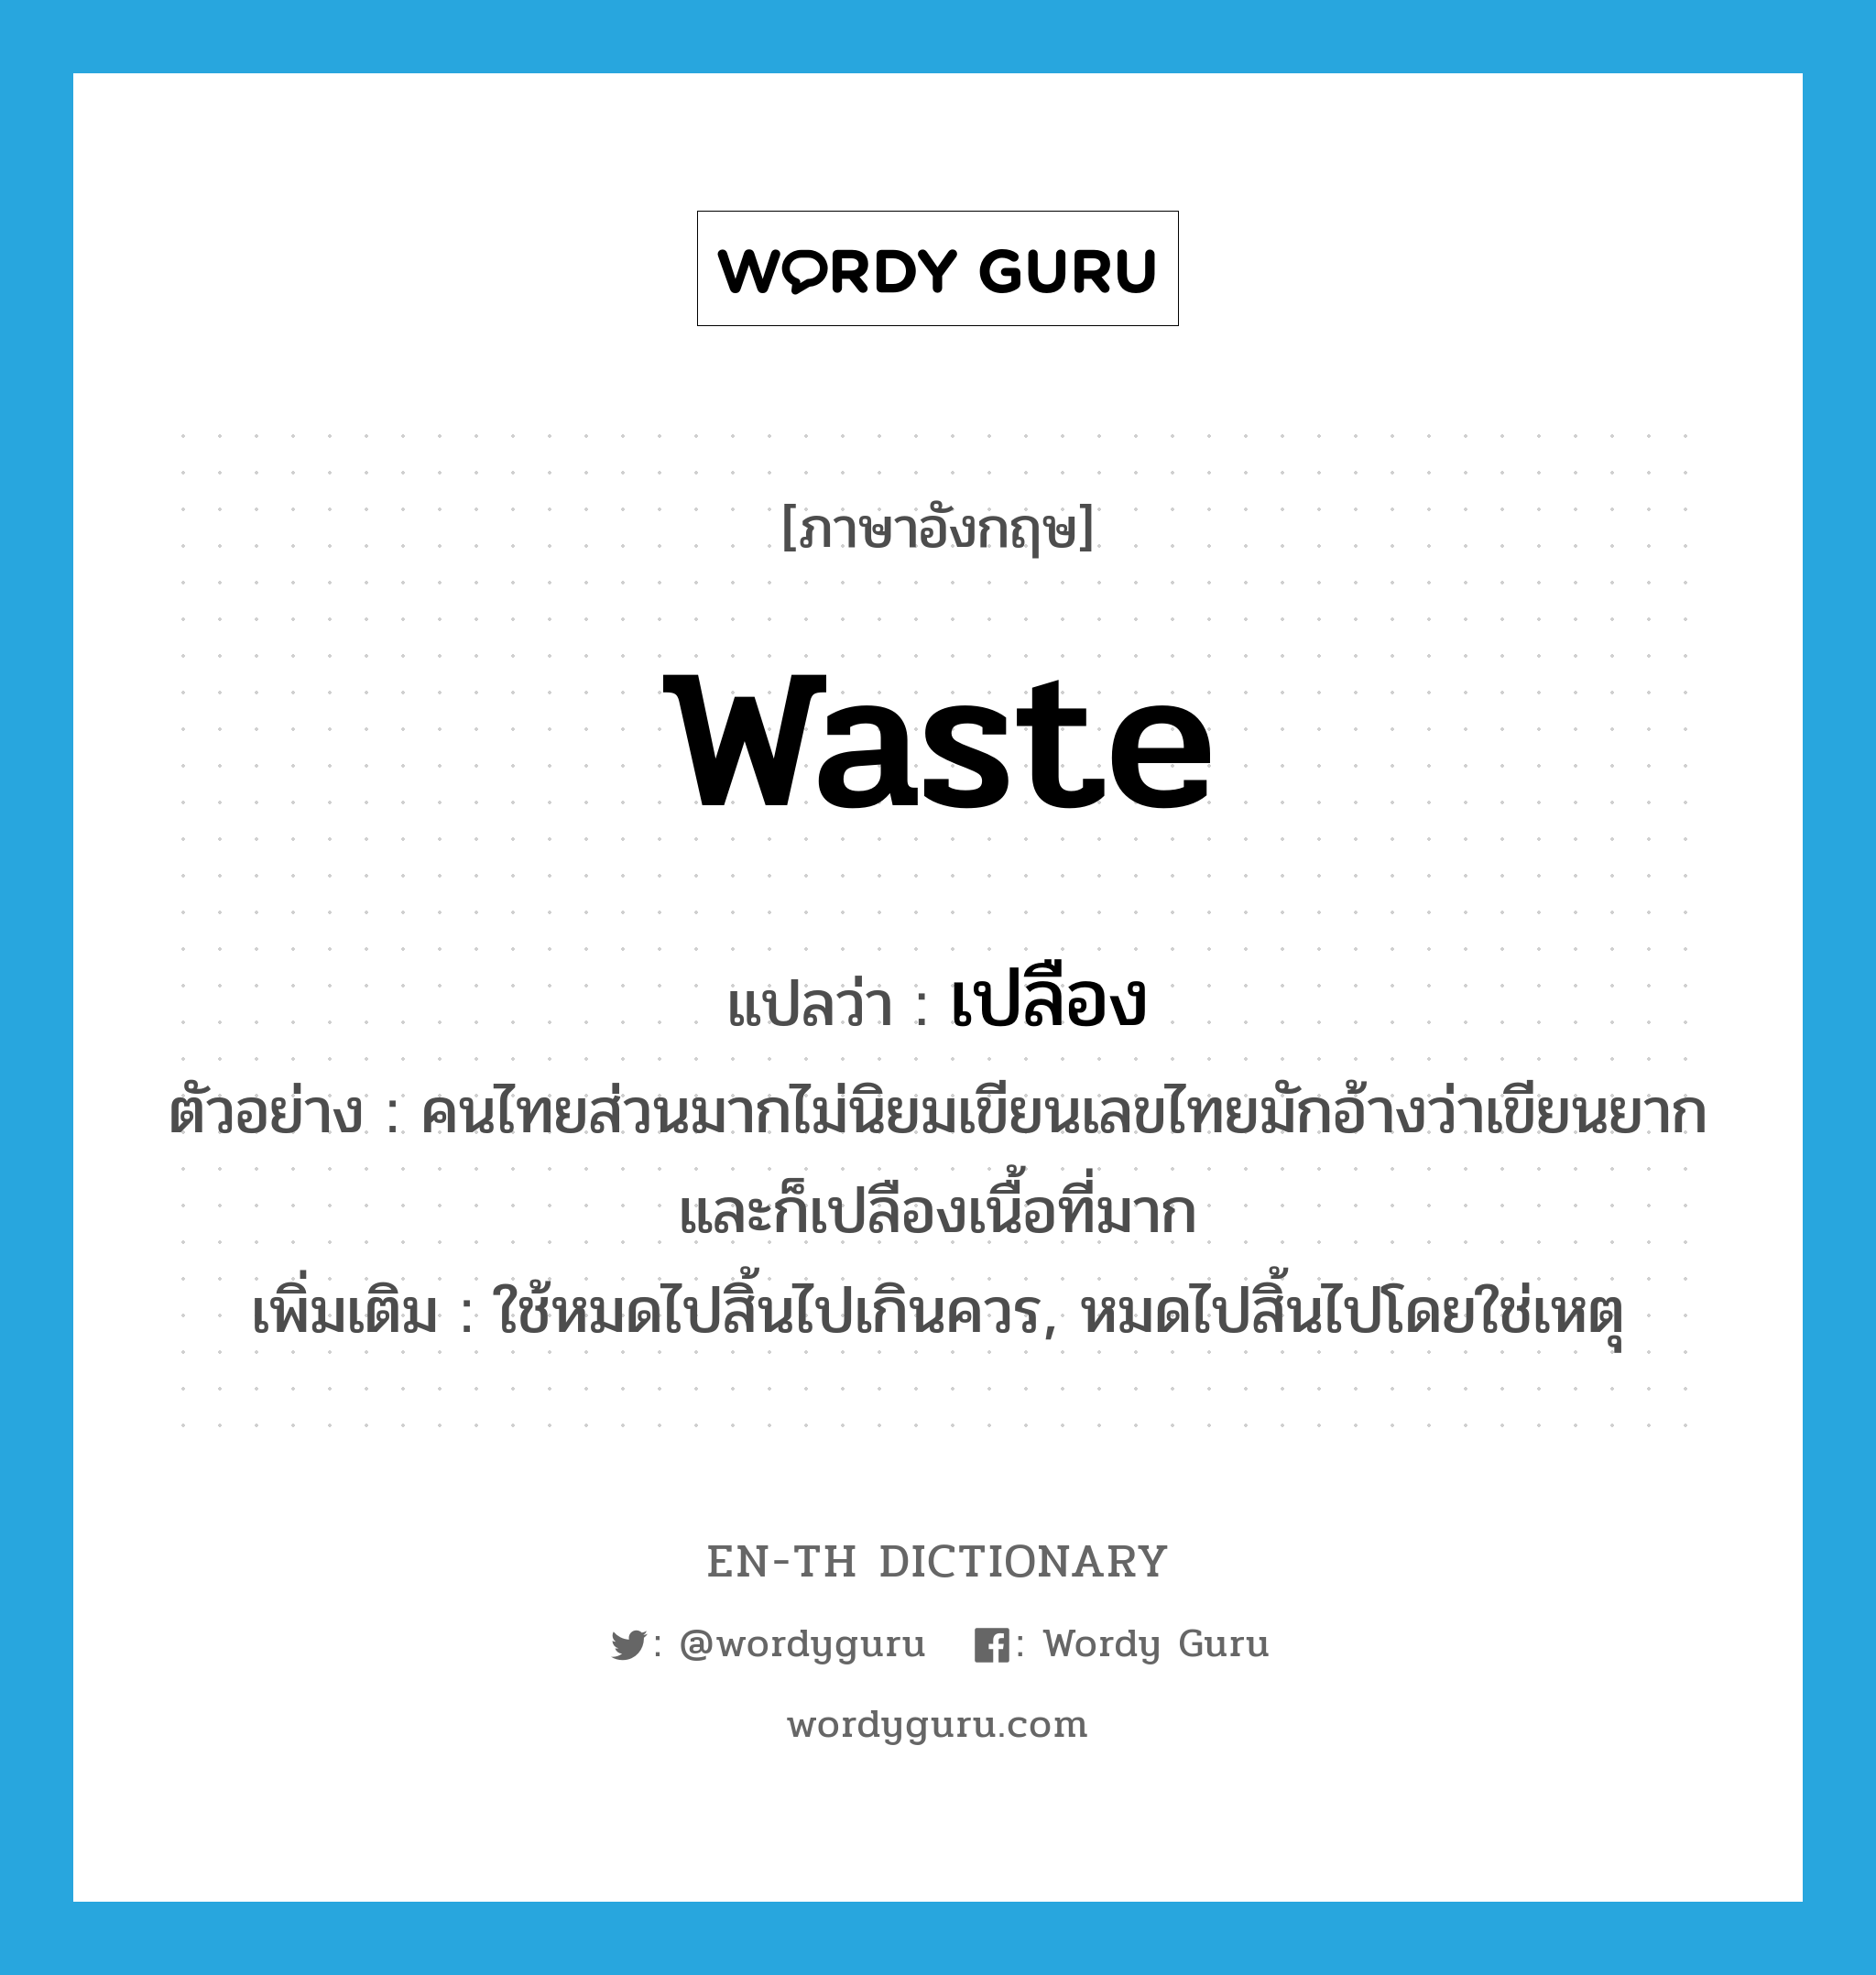 waste แปลว่า?, คำศัพท์ภาษาอังกฤษ waste แปลว่า เปลือง ประเภท V ตัวอย่าง คนไทยส่วนมากไม่นิยมเขียนเลขไทยมักอ้างว่าเขียนยากและก็เปลืองเนื้อที่มาก เพิ่มเติม ใช้หมดไปสิ้นไปเกินควร, หมดไปสิ้นไปโดยใช่เหตุ หมวด V